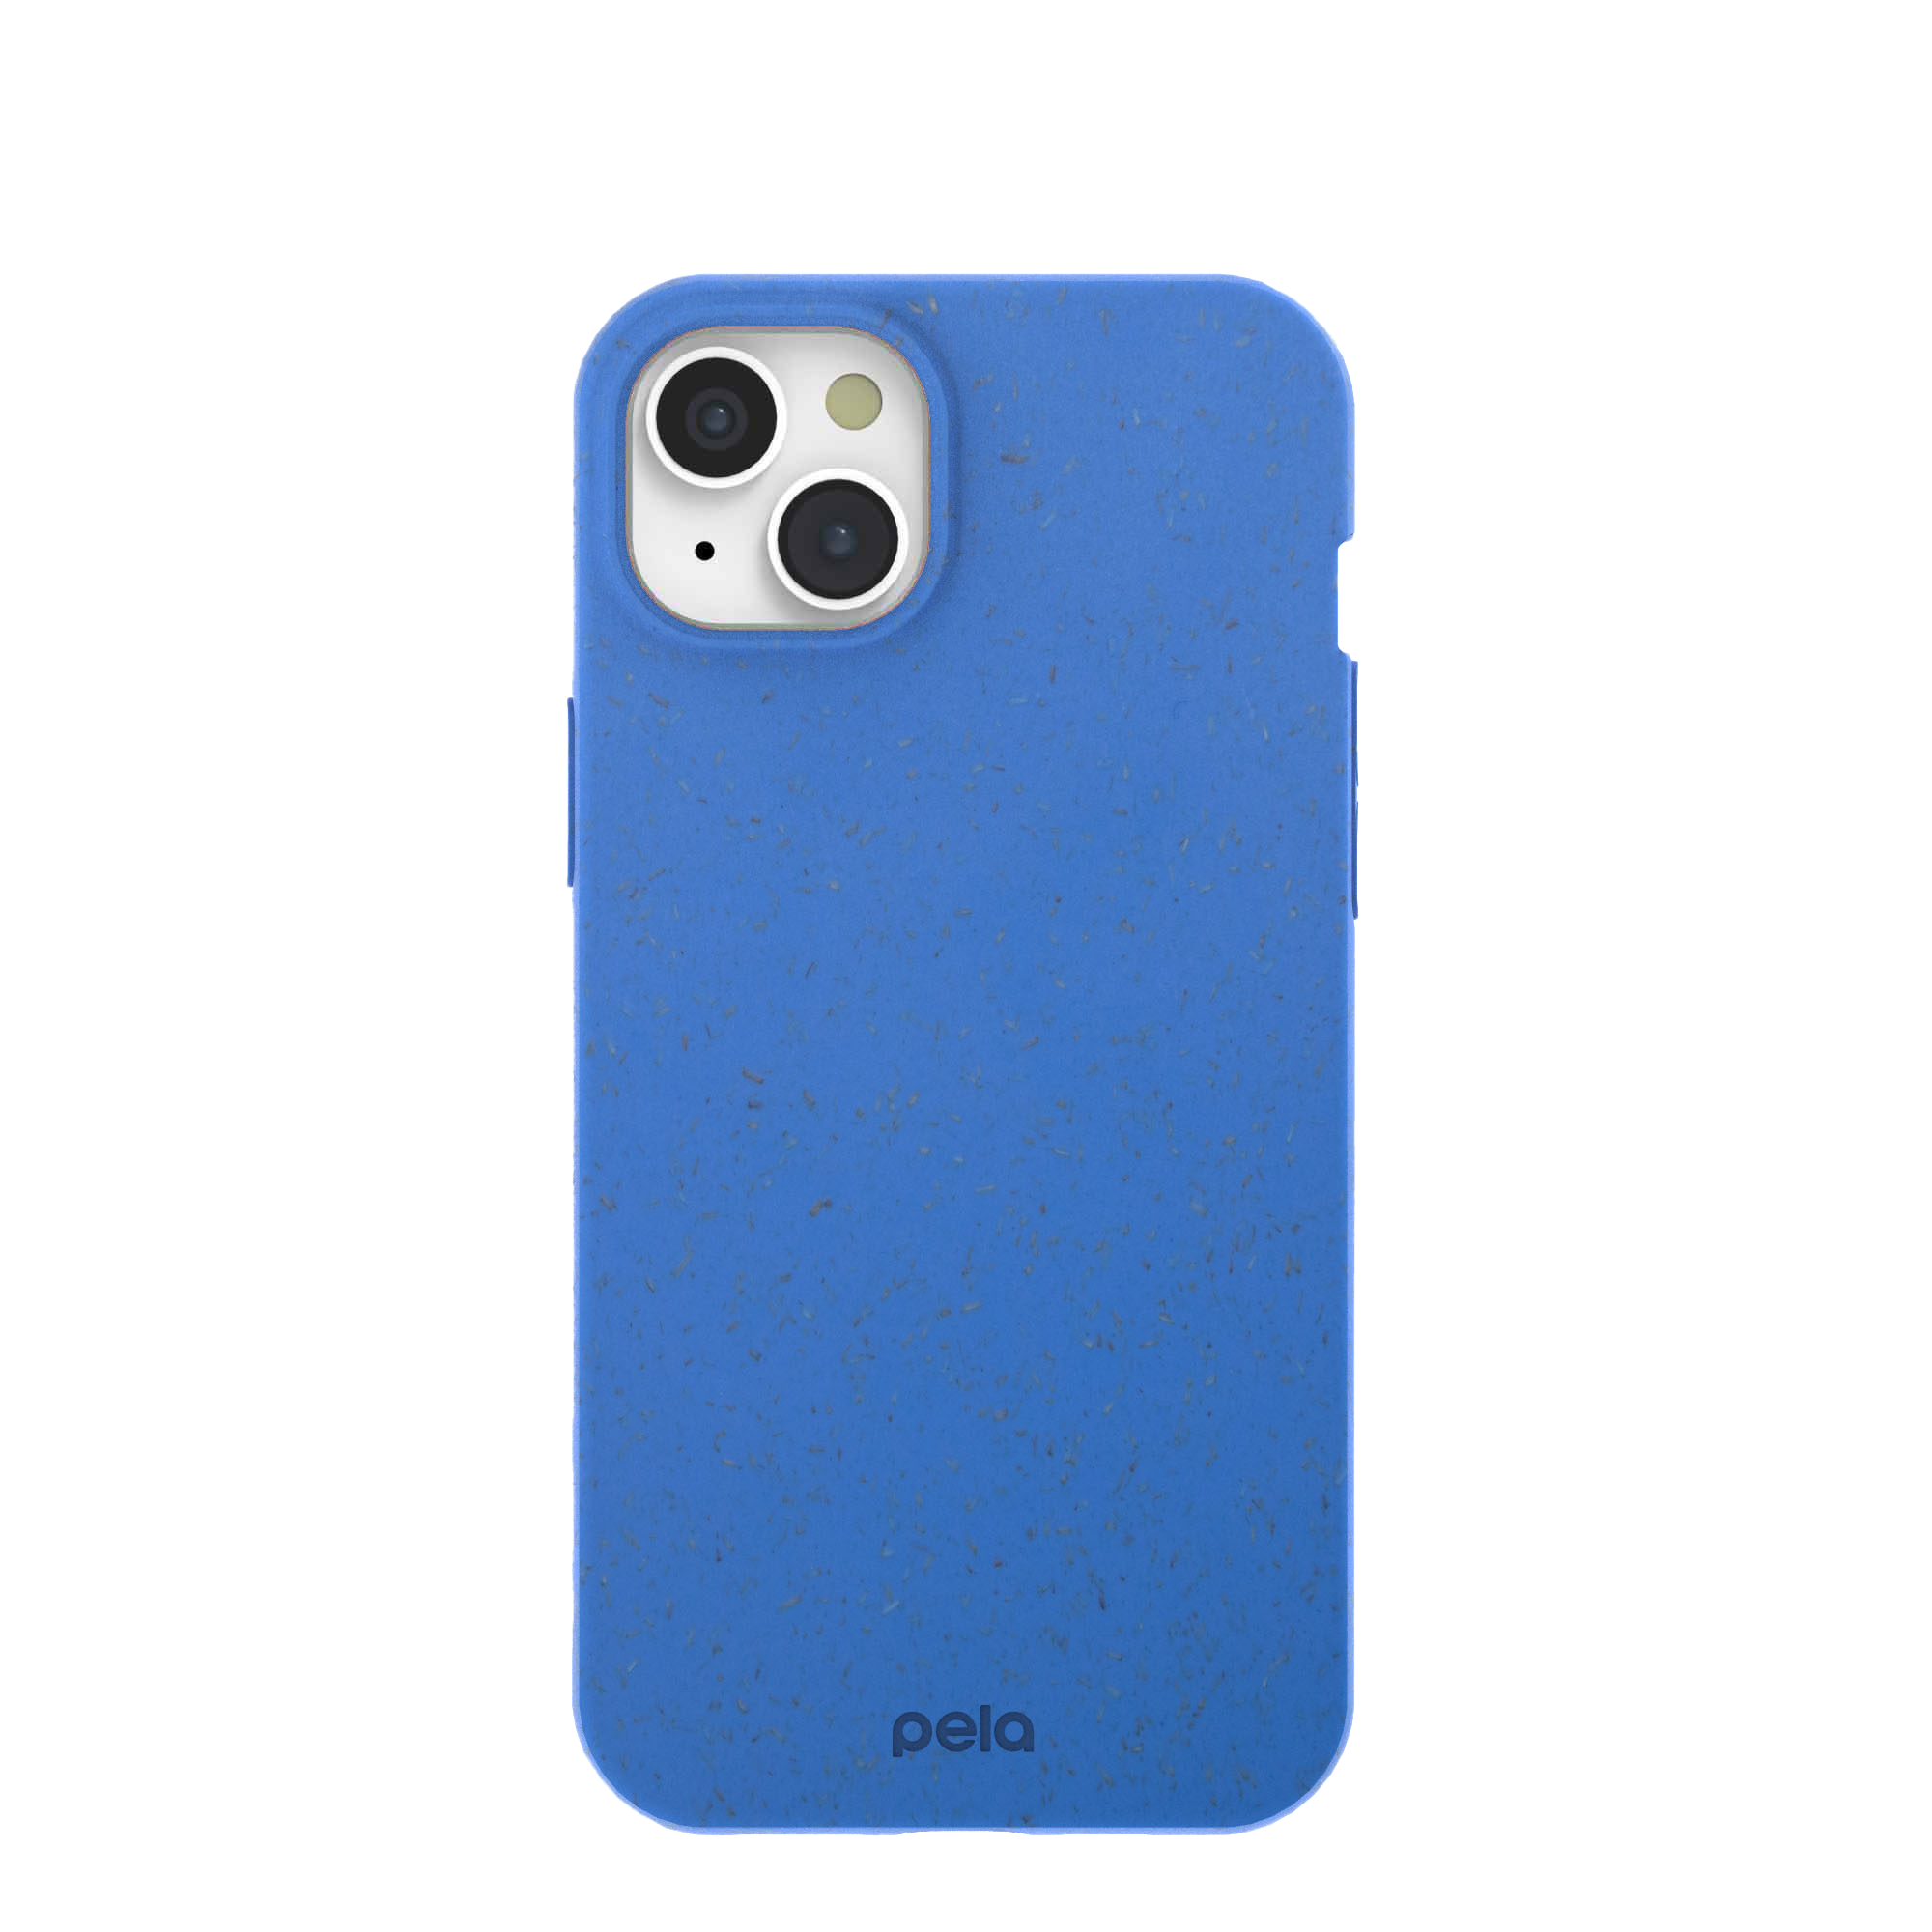 Blue Pela phone case on white background.